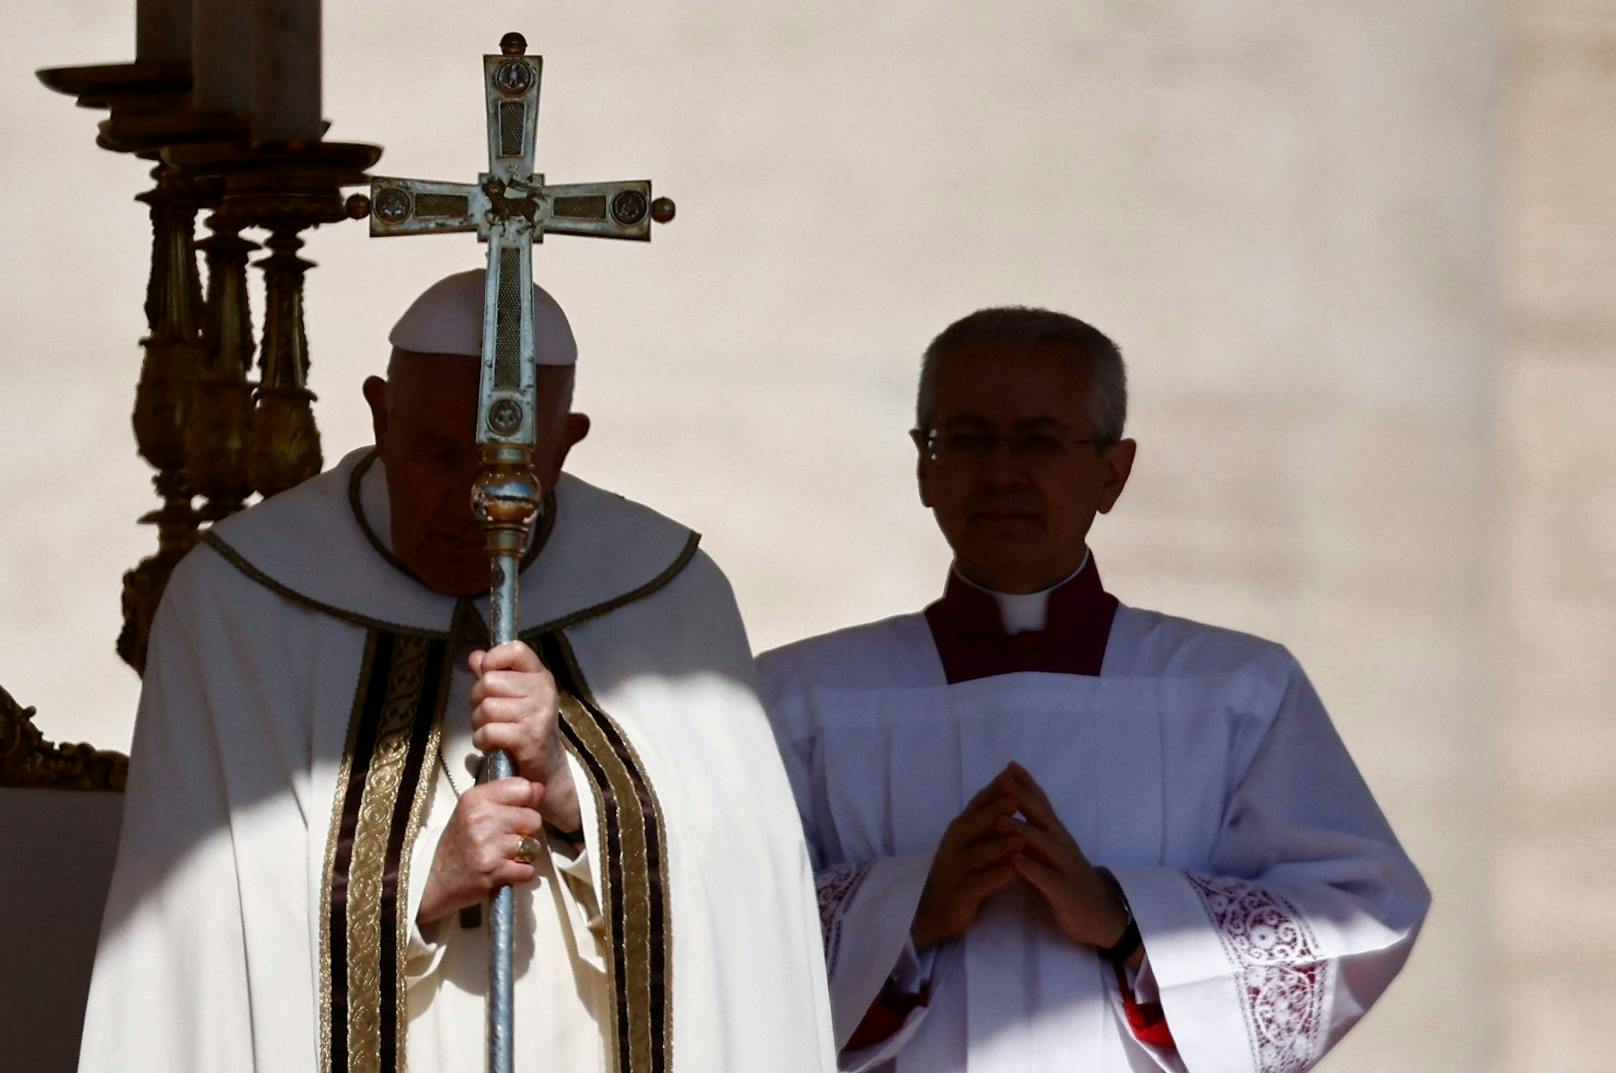 Der Pontifex urgierte Frieden und Versöhnung für Haiti, Äthiopien, Nicaragua und Eritrea.